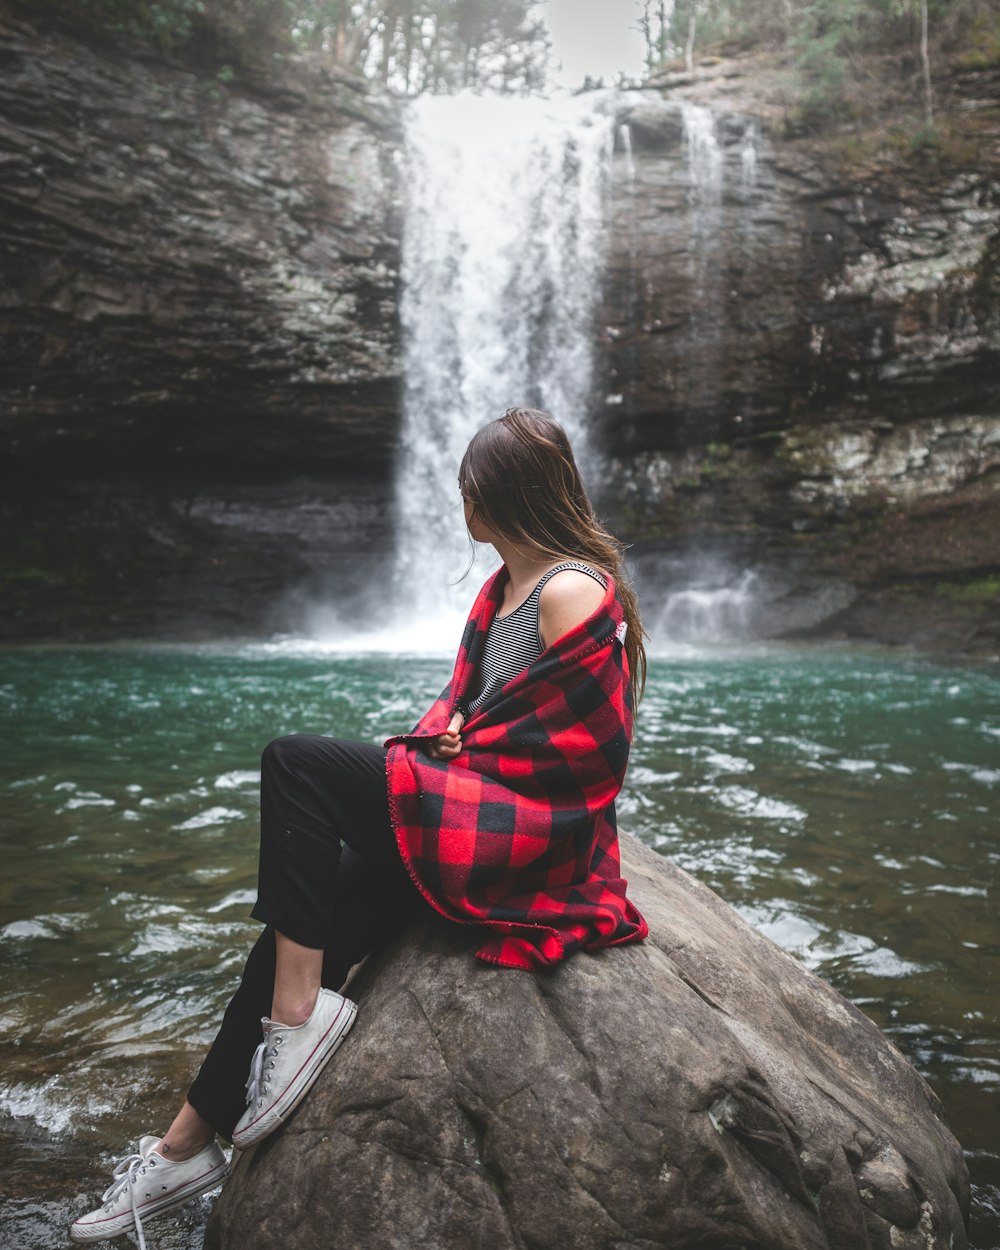 赤と黒のトップスを着た女性が、昼間、大きな岩の上に座って滝を眺めている